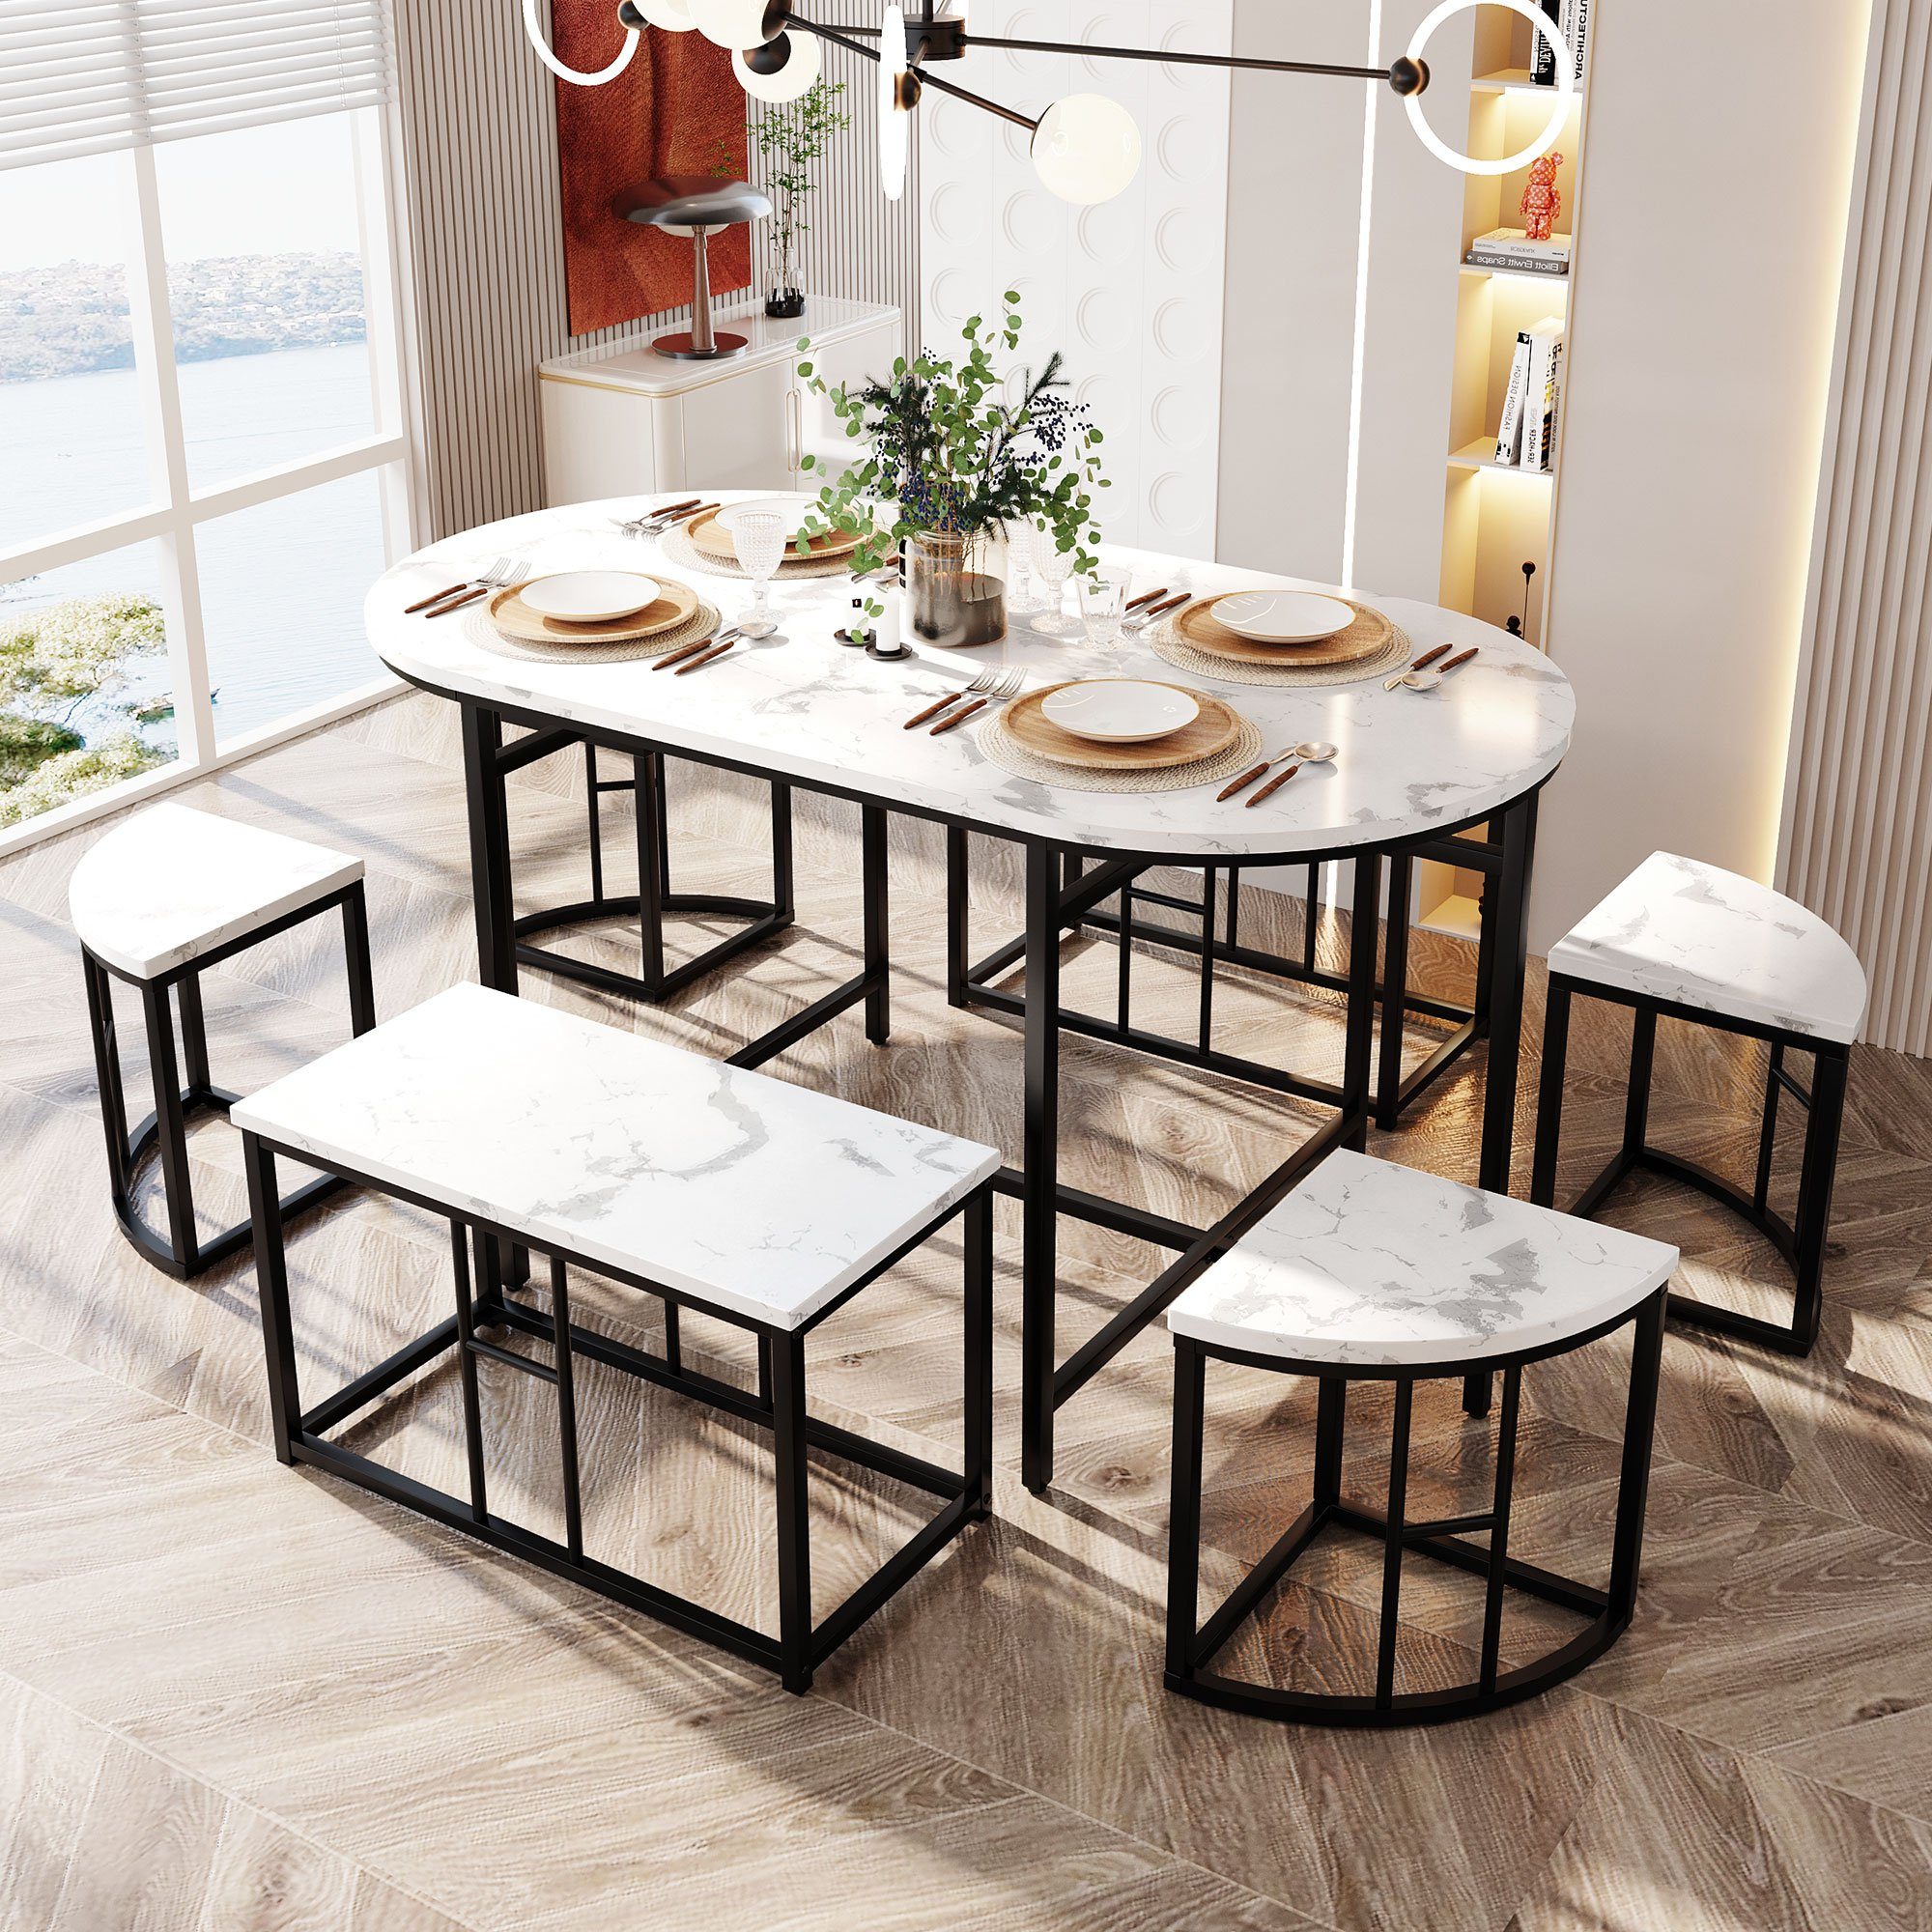 Tischplatte:Weiß 4 Tisch (1 7-tlg., in Marmoroptik) Beine:Schrawz 2 Essgruppe, Hocker und bank, Tisch, OKWISH